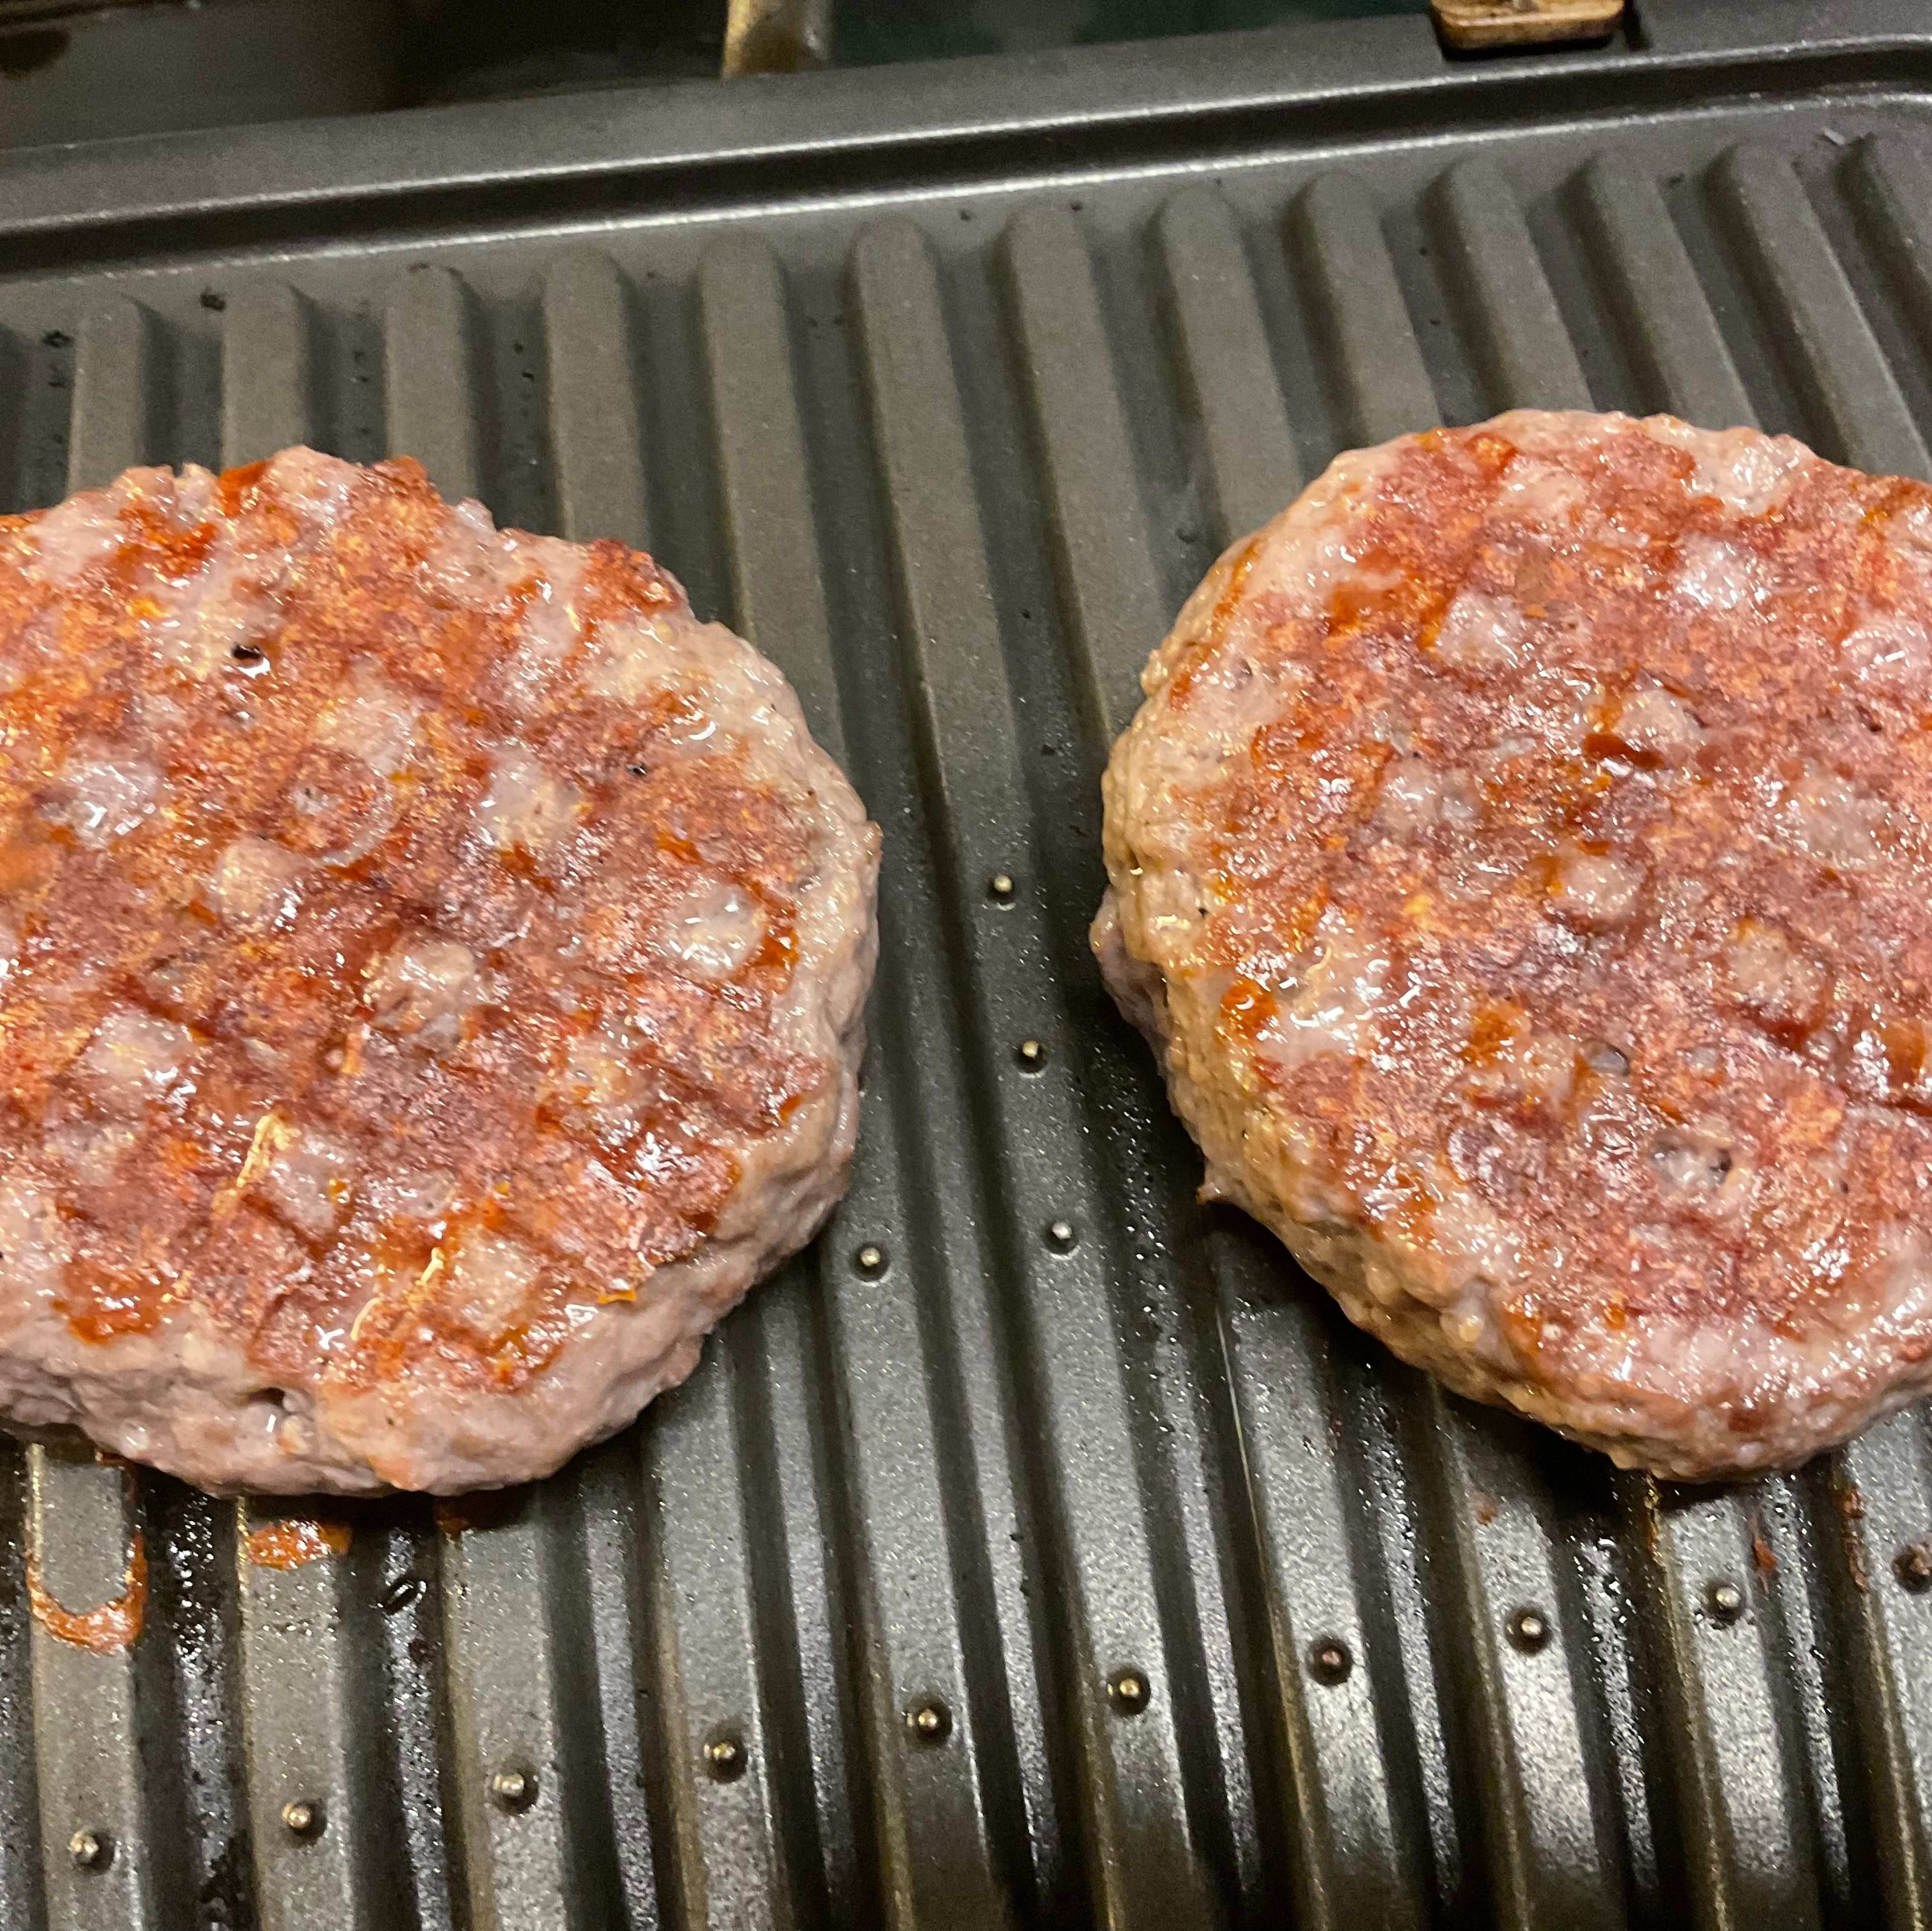 Die Hamburgerpads sind inzwischen prächtig auf dem Grill geworden. Kann man well done grillen, oder so wie ich es mag medium, vielleicht sogar rare. Bei der Qualität dieses Rindfleisches alles möglich.